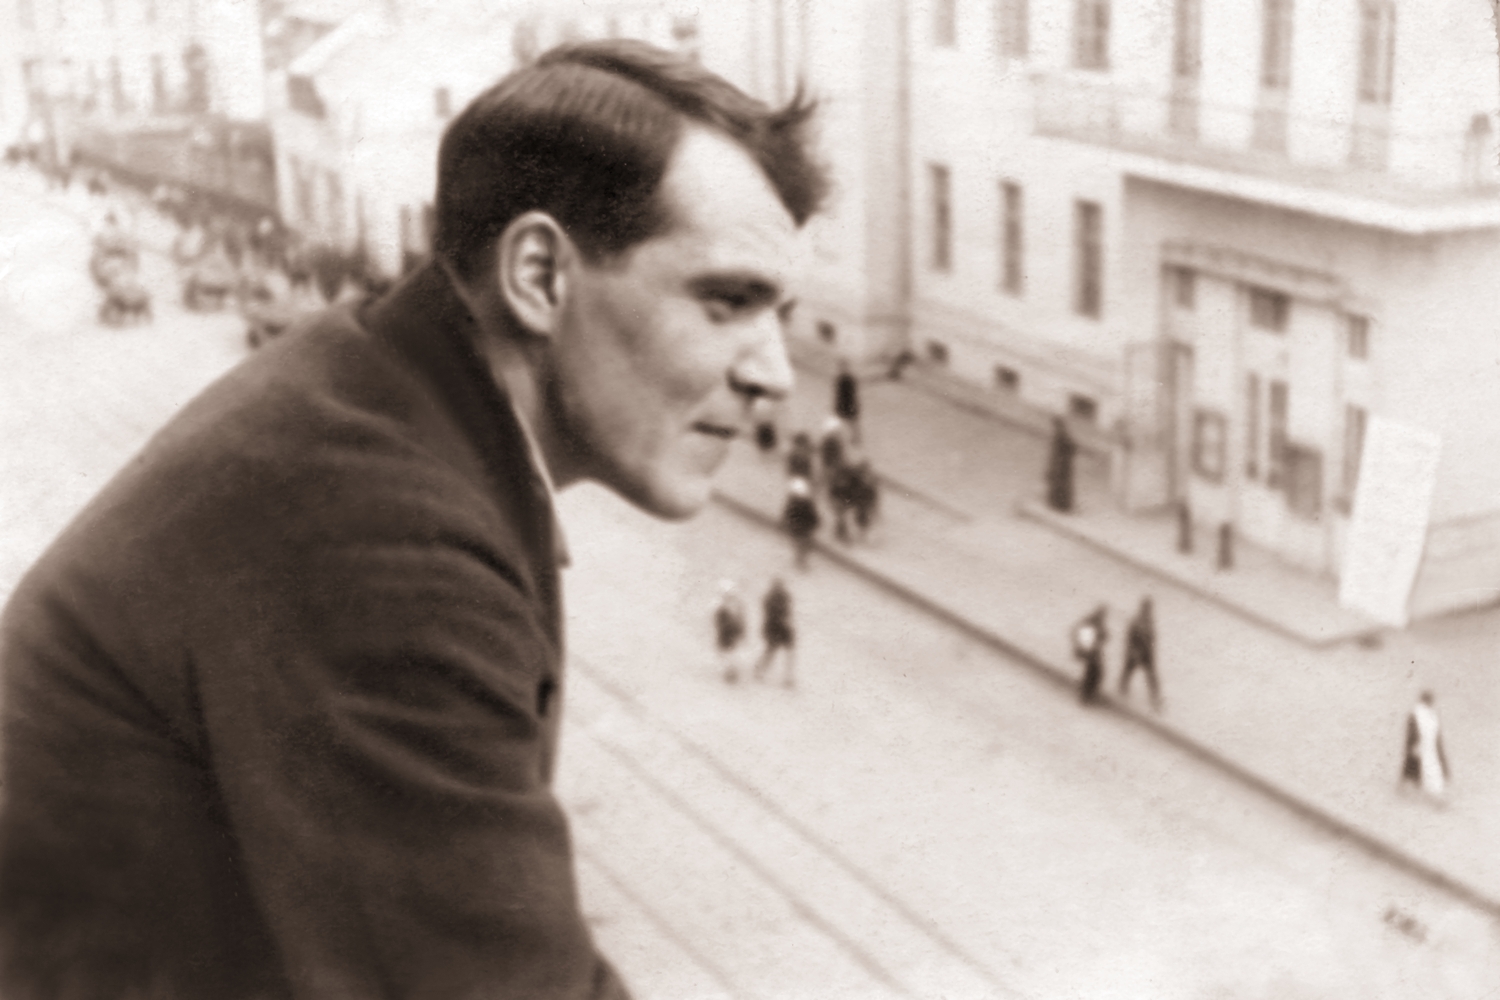 Василий Яковлевич Ходаков – специальный корреспондент газеты "Правда" на Дальнем Востоке на балконе своей квартиры в Хабаровске, 1935г.